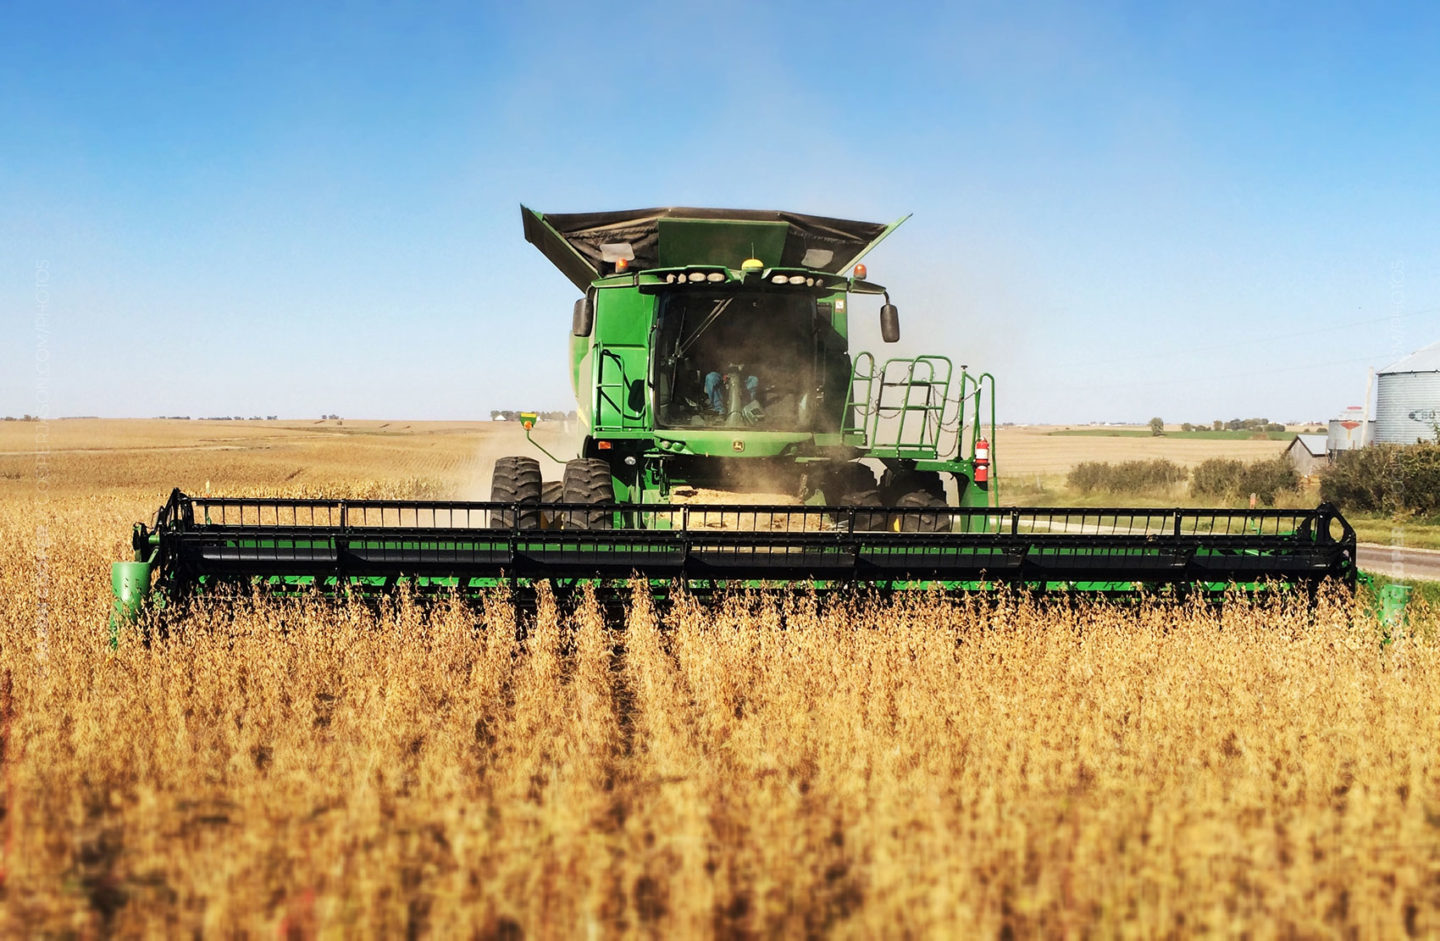 John Deere combine harvesting soy beans in an Iowa field